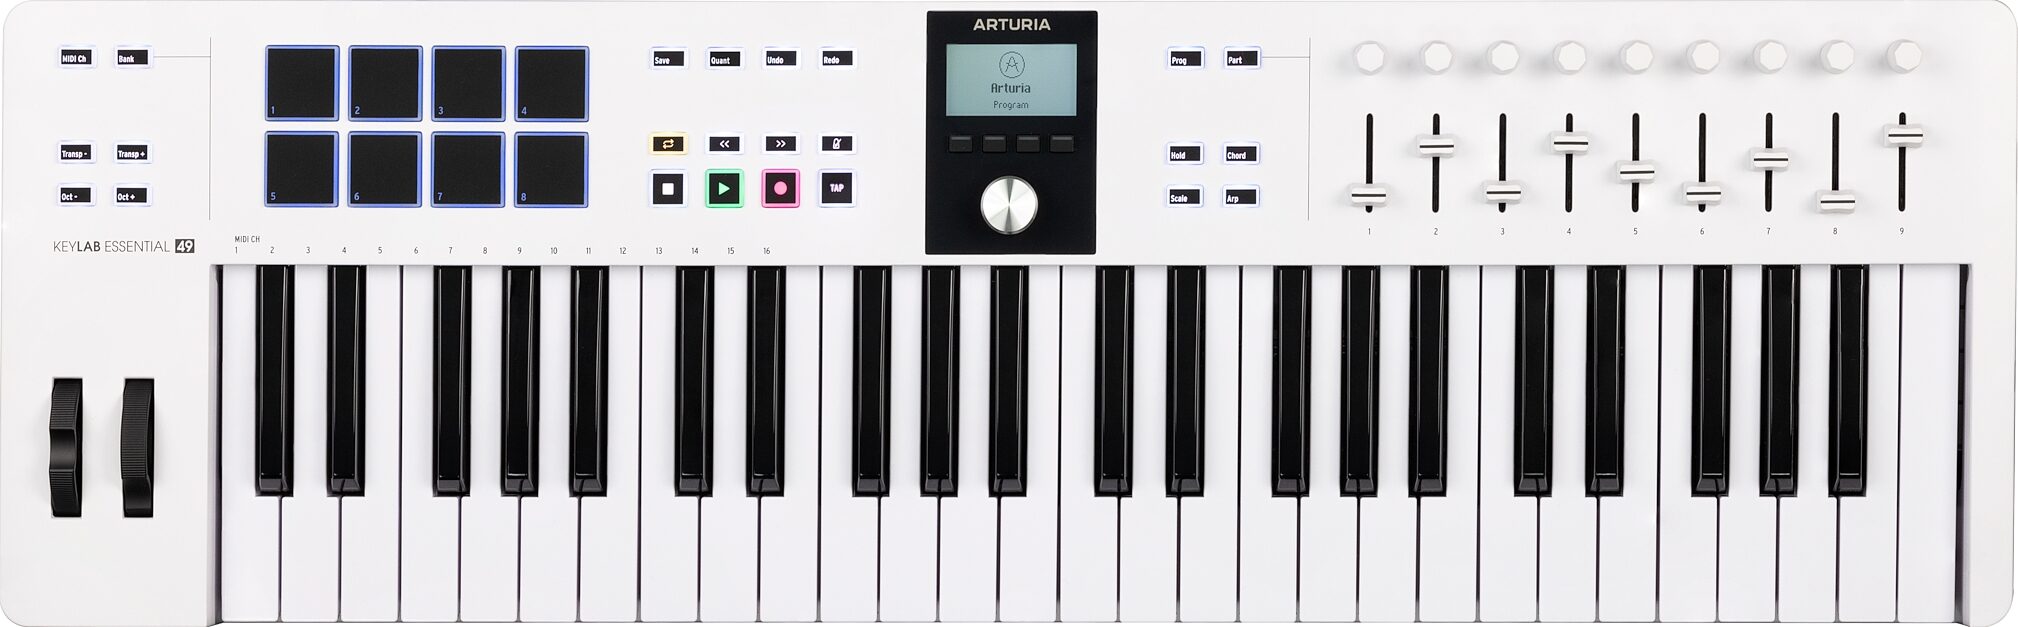 Arturia KeyLab Essential 49 MK3 MIDI Keyboard Controller, 49-Key